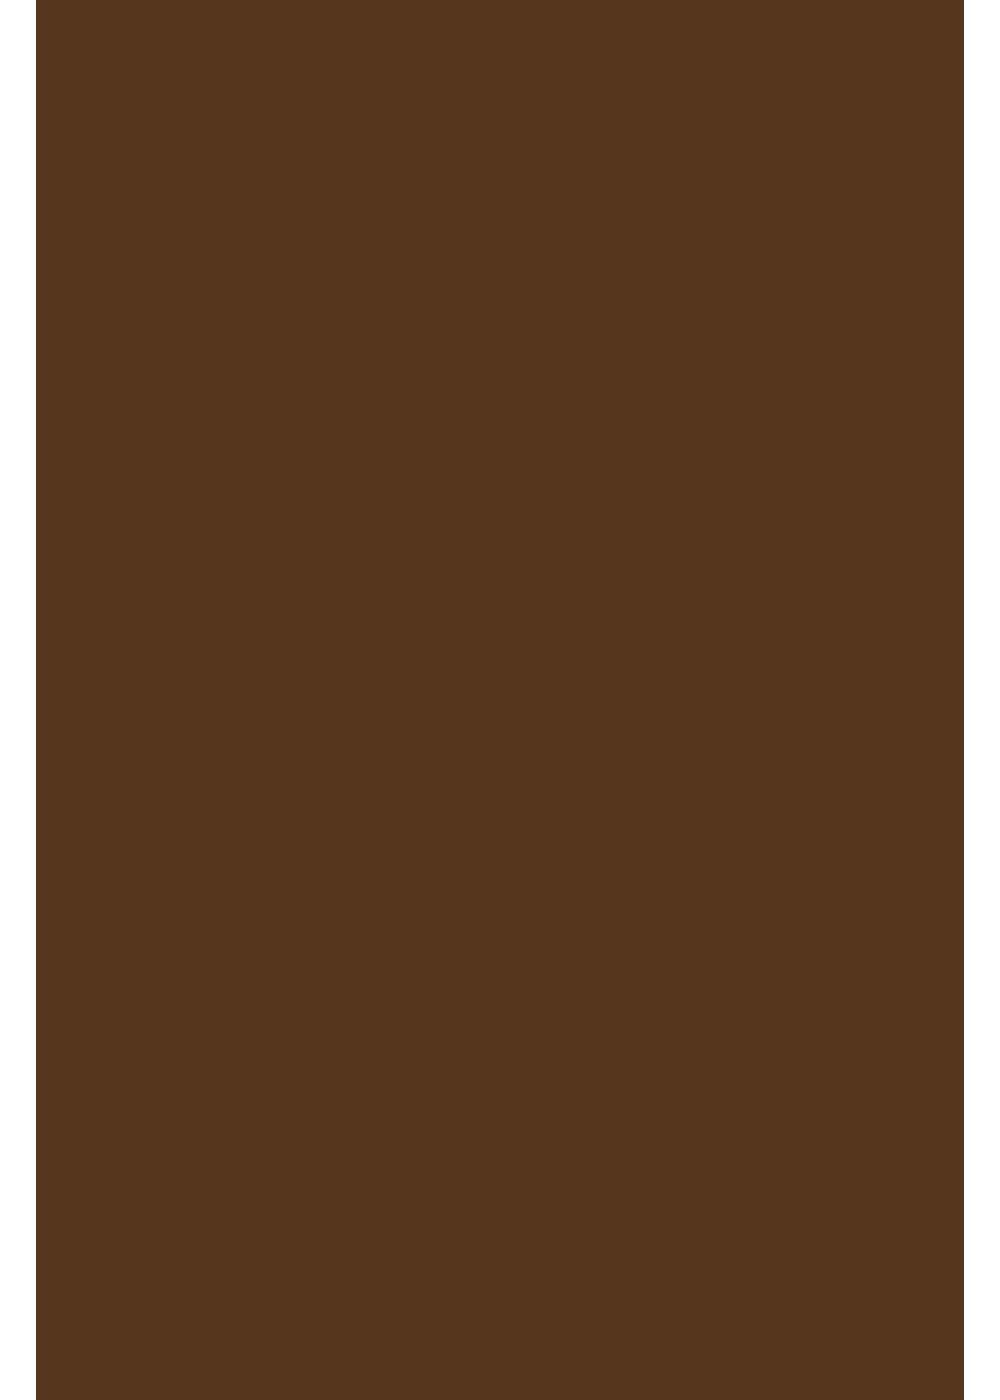 Hilltop Transparentpapier A4 Transferfolie/Textilfolie zum Aufbügeln - perfekt zum Plottern Chocolate | Papier